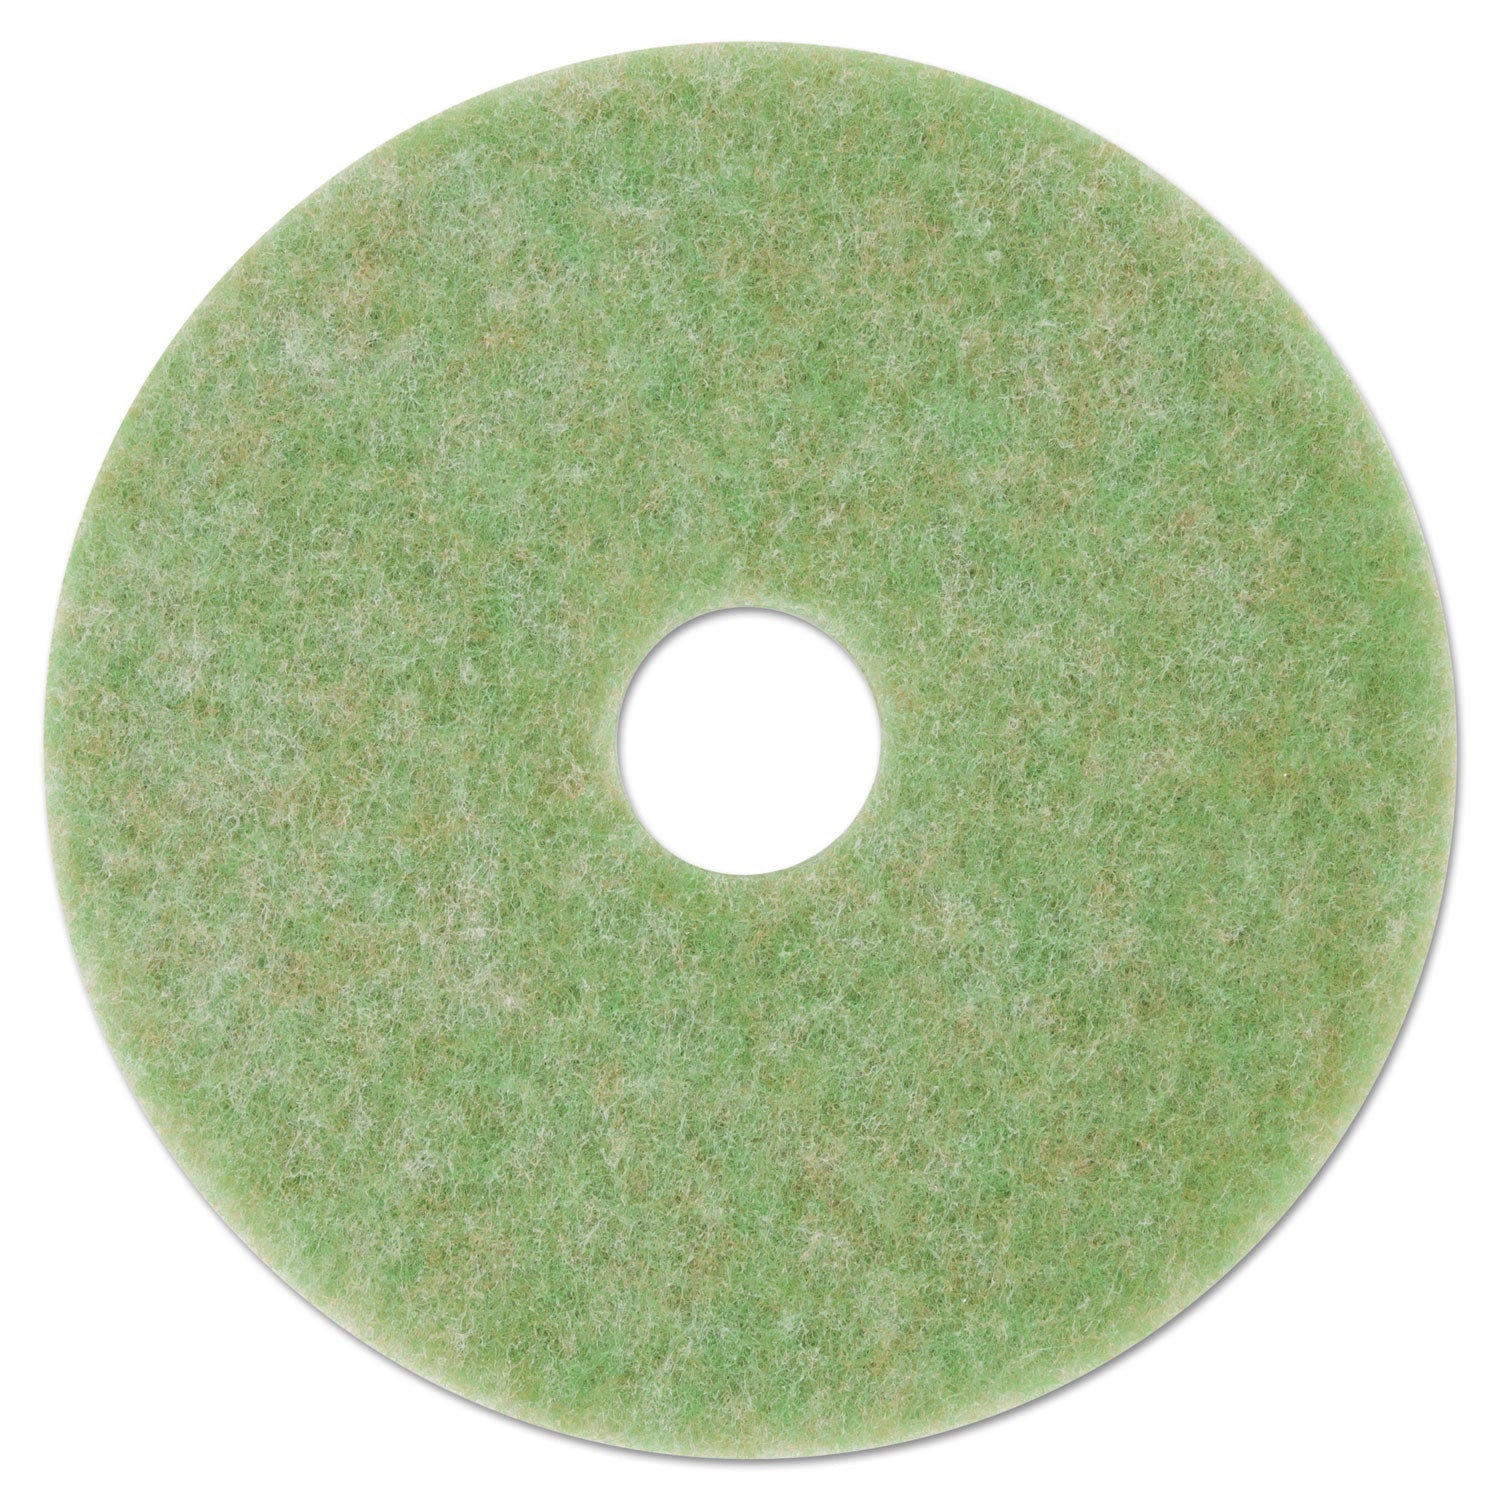 low-speed-topline-autoscrubber-floor-pads-5000-17-diameter-green-amber-5-carton_mmm18049 - 1